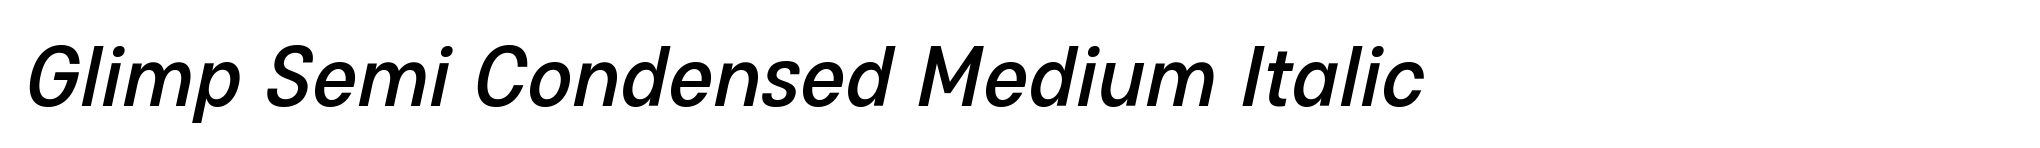 Glimp Semi Condensed Medium Italic image